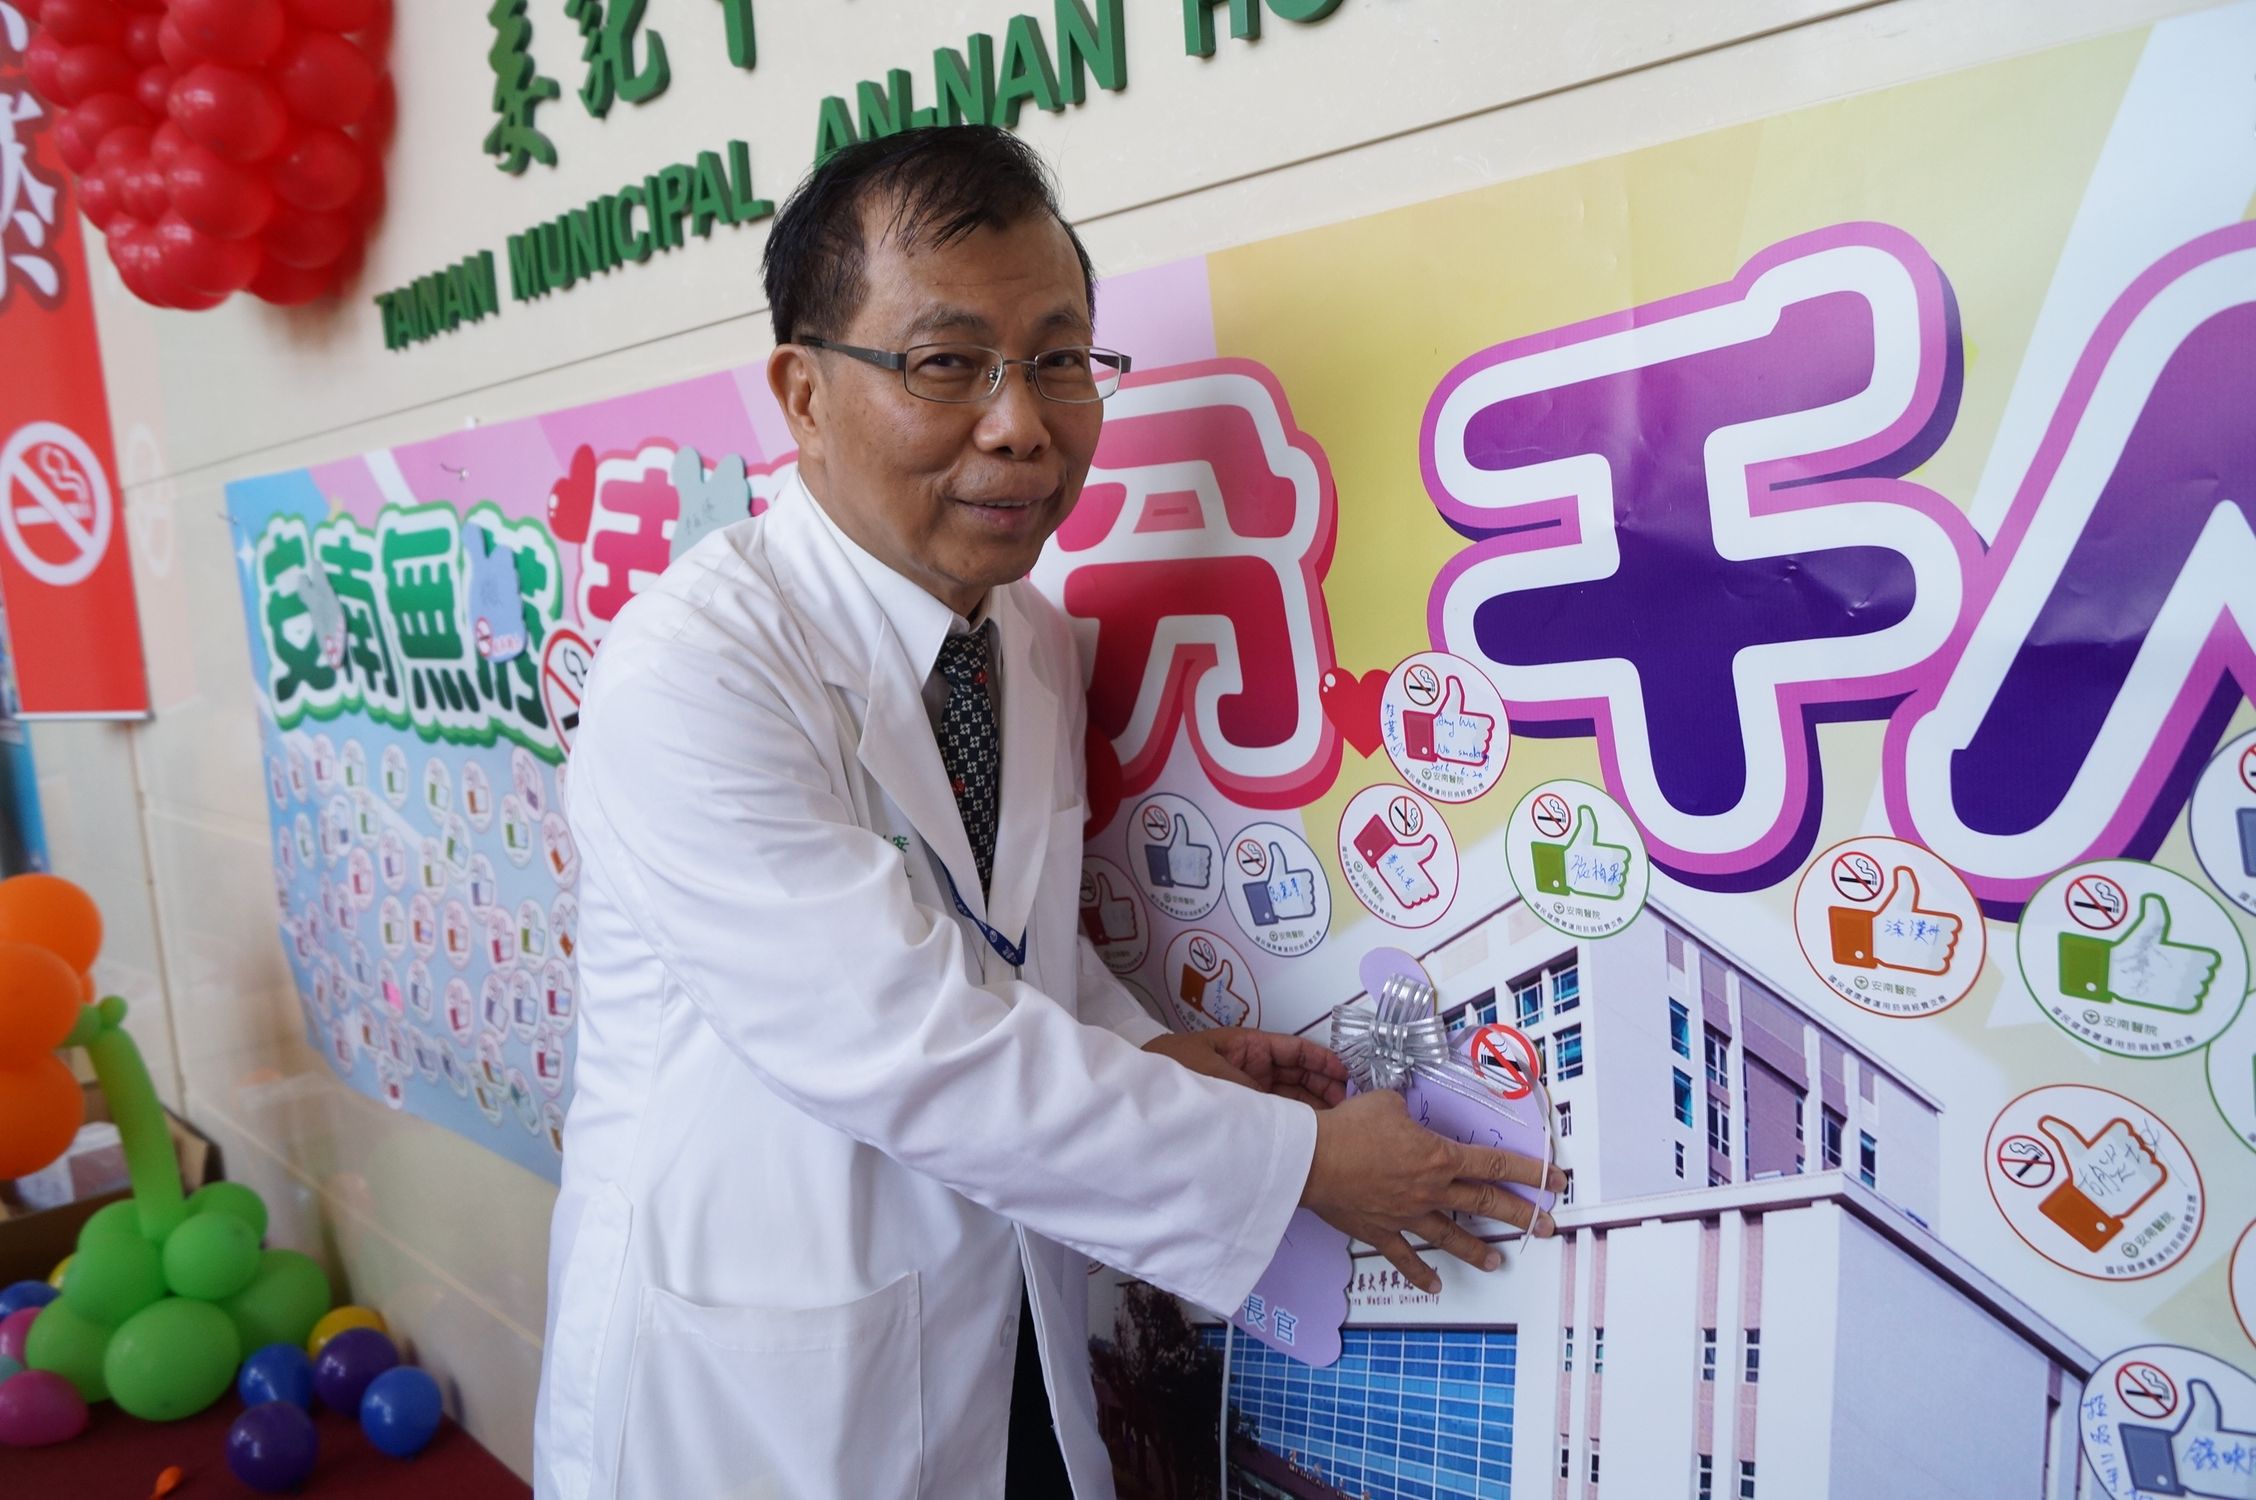 吳彬安副院長宣誓安南醫院為無菸醫院-院區內公告全面禁菸(含二手菸與電子煙)。